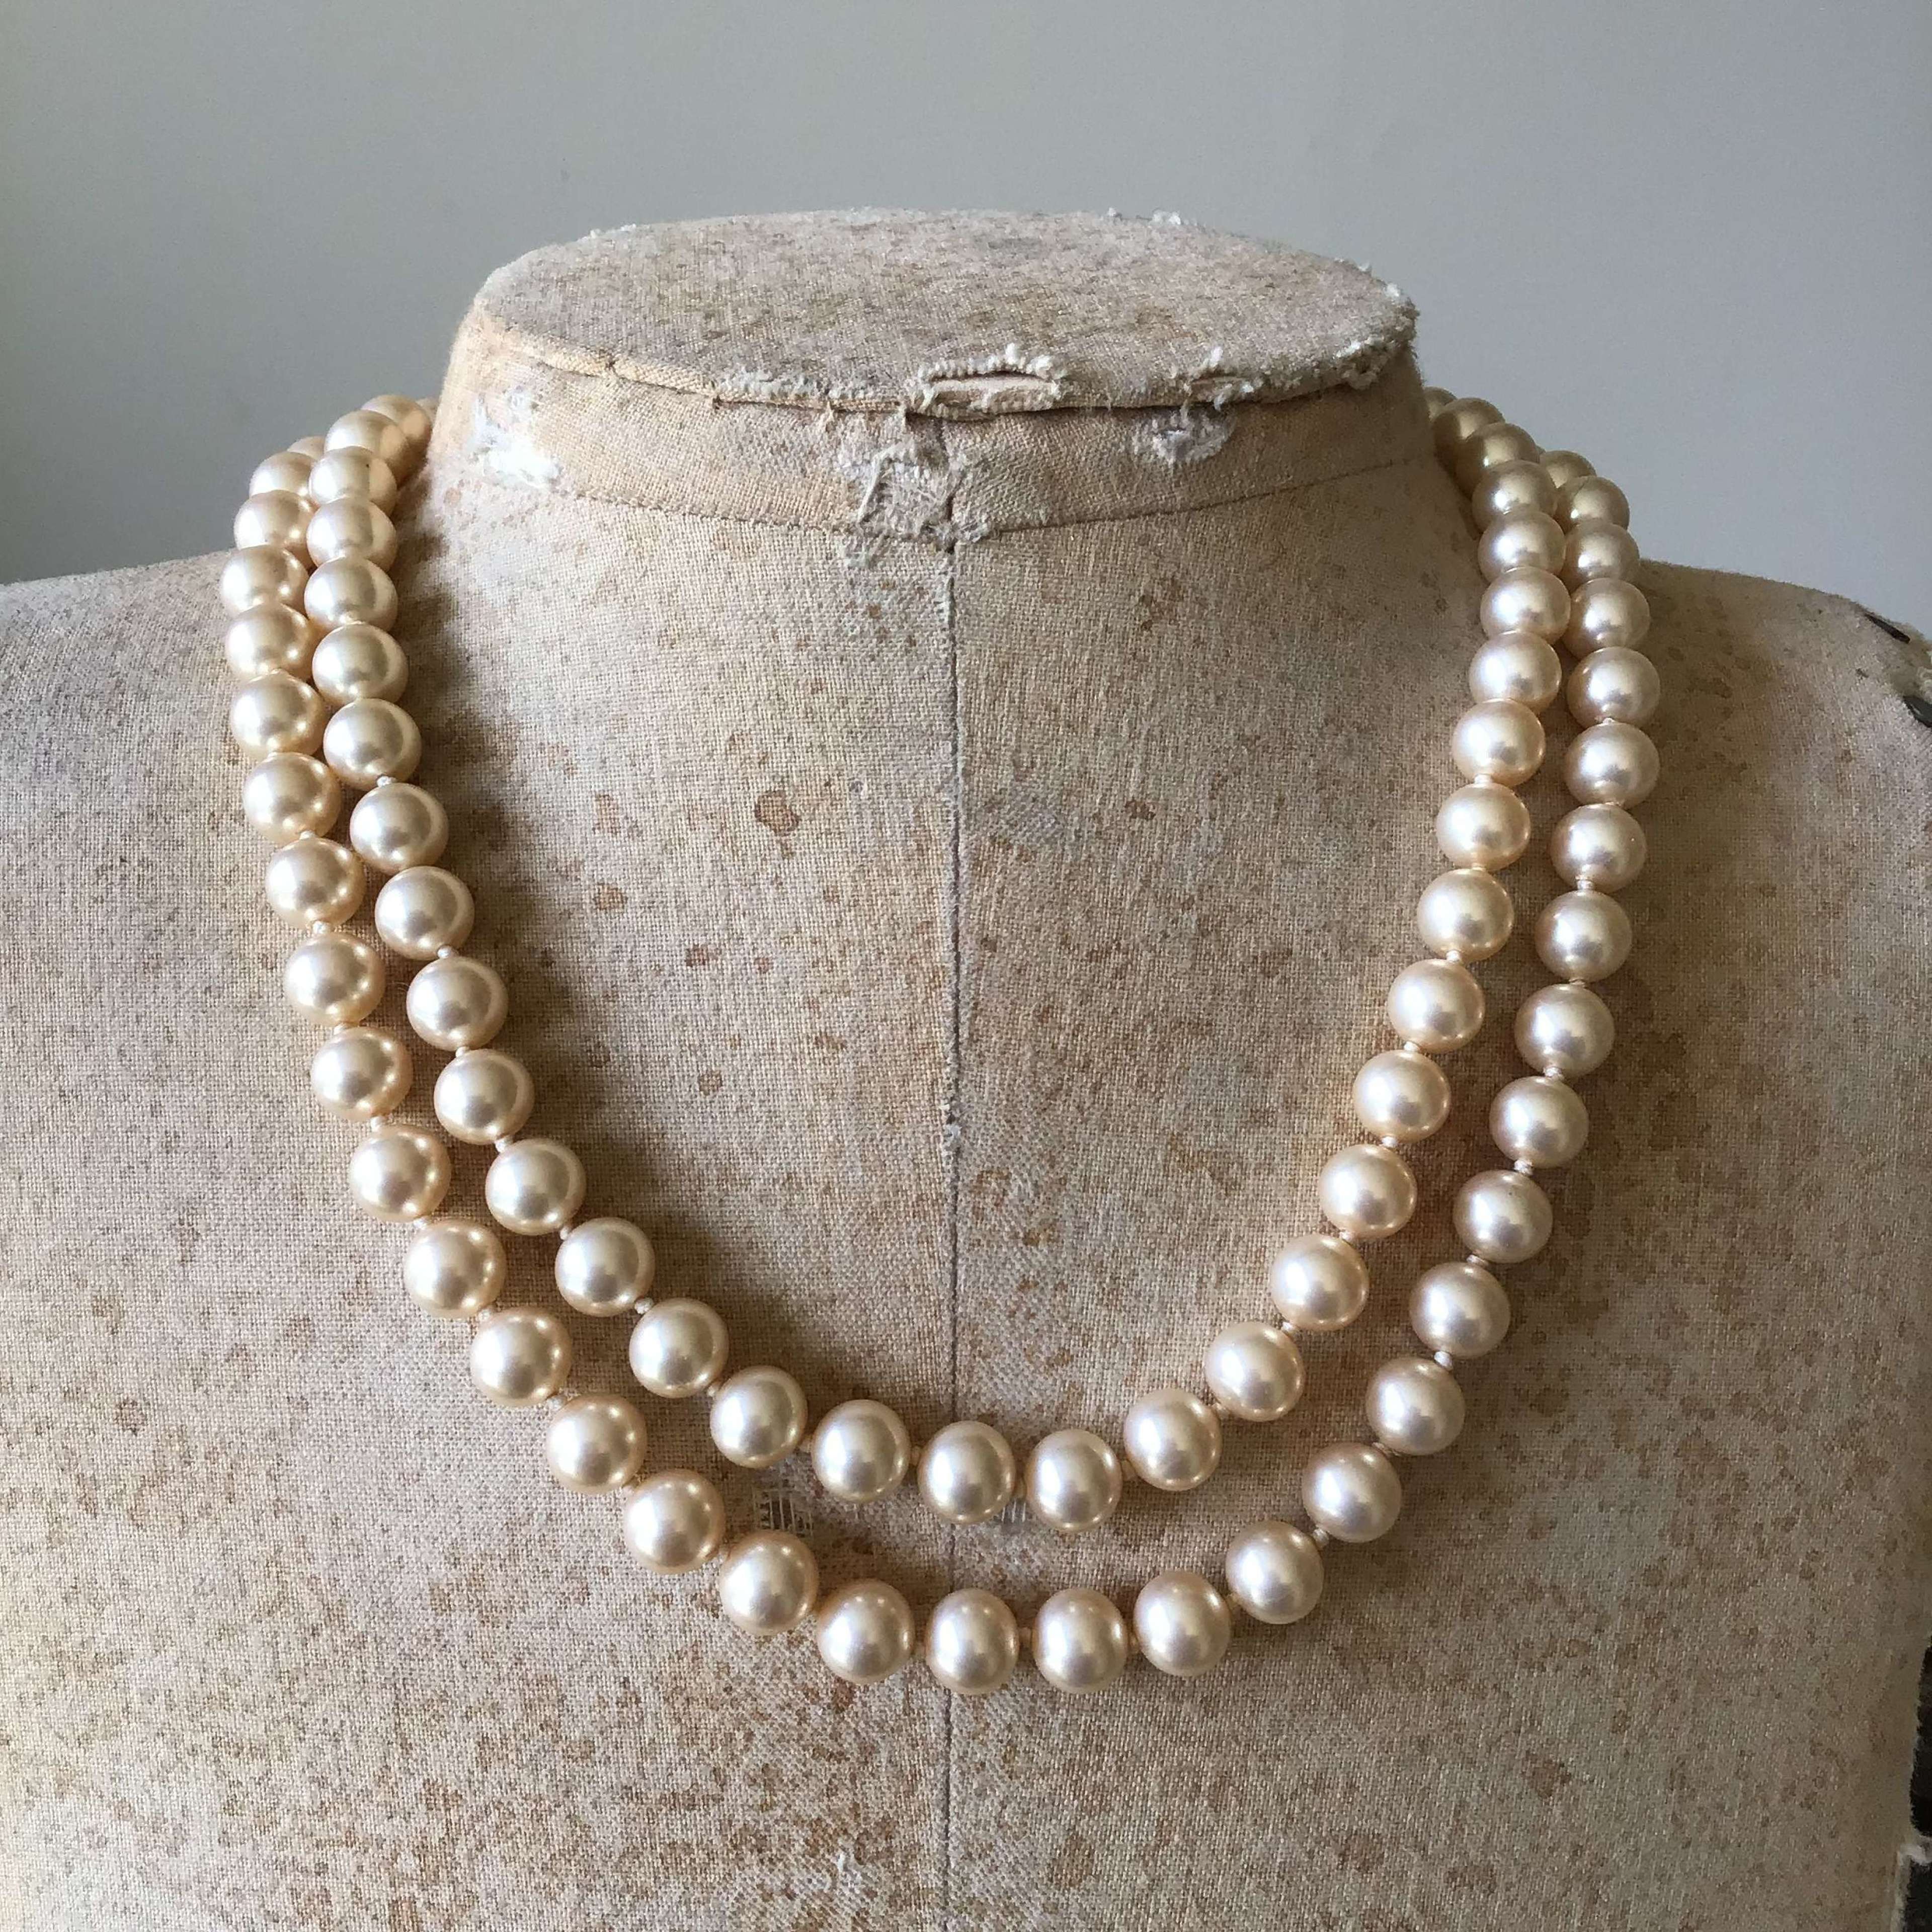 2 Vintage Faux Pearl Necklaces Necklace